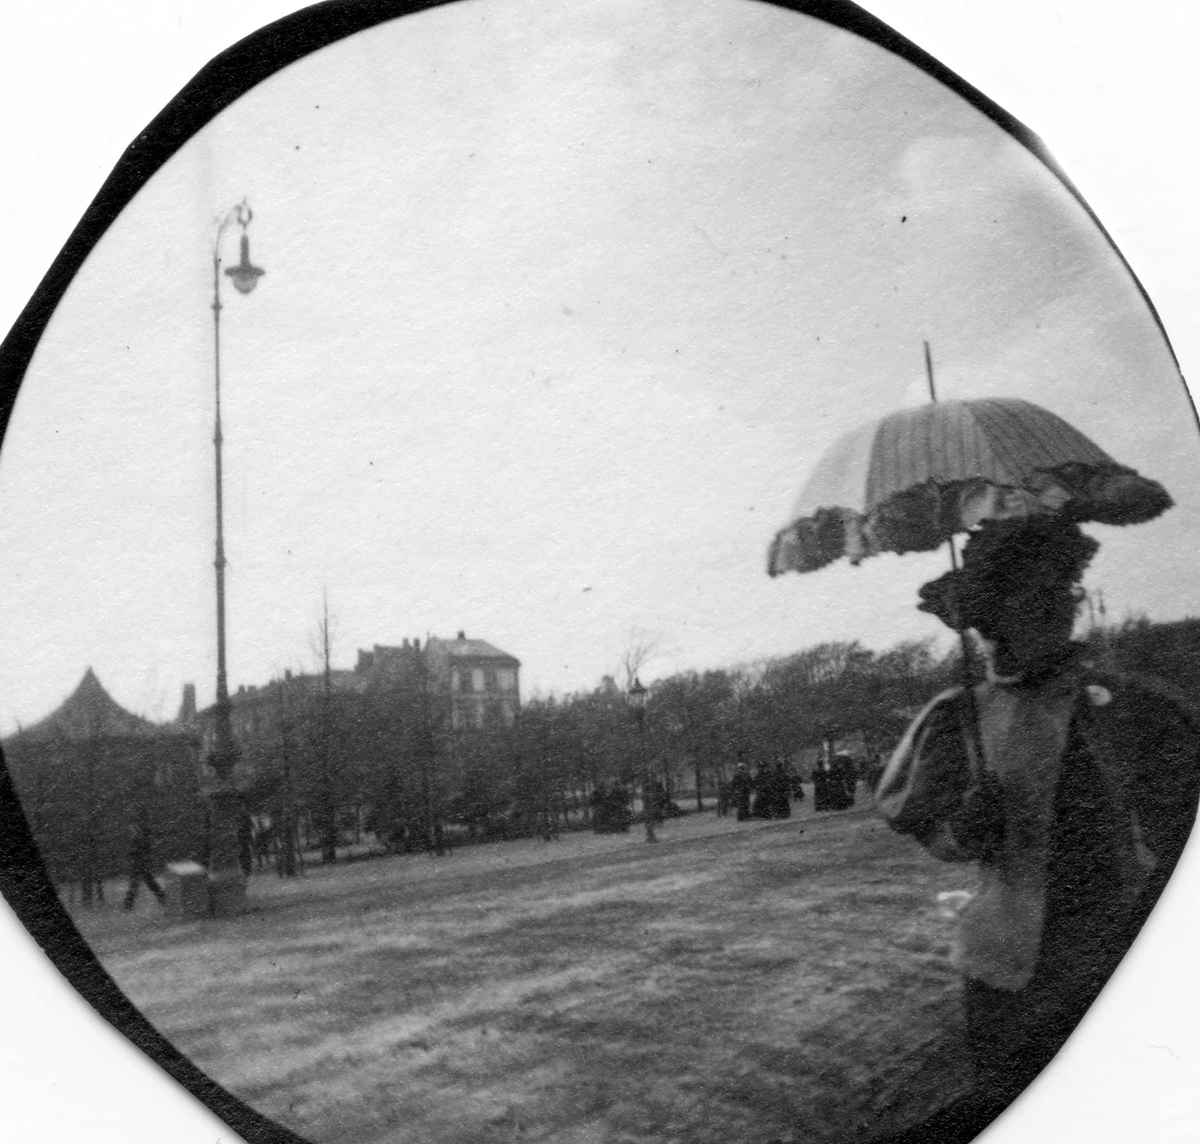 Kvinne med parasoll spaserer i park, Oslo. Bygårder i bakgrunnen.